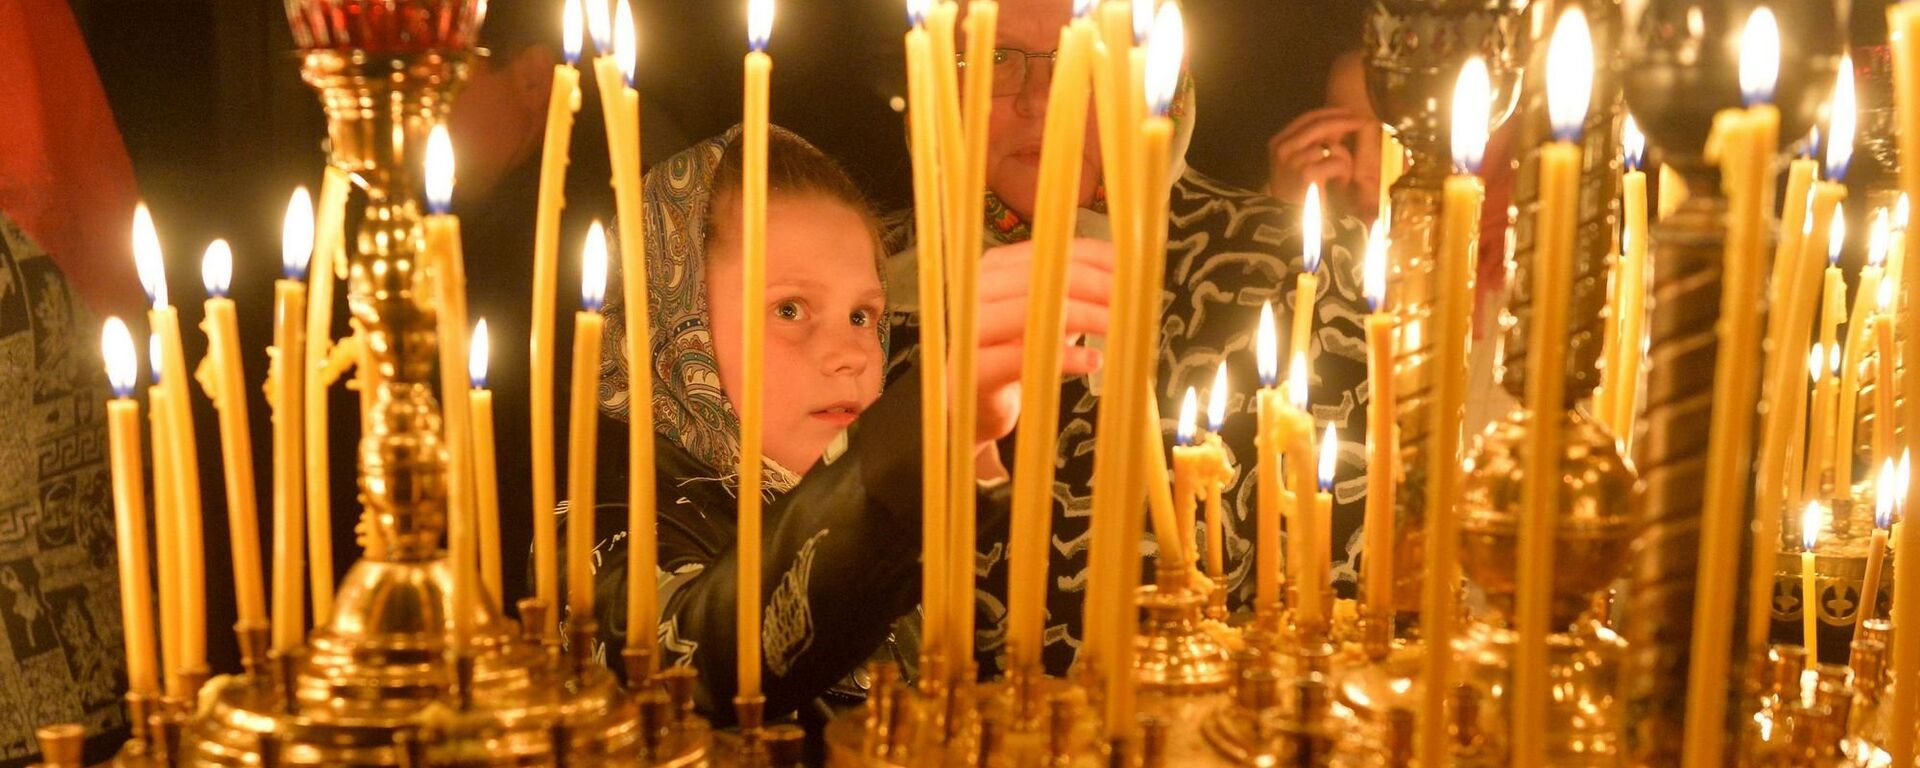 Даже самые маленькие ставят в церквях свечи на пасхальных службах - Sputnik Беларусь, 1920, 15.03.2021